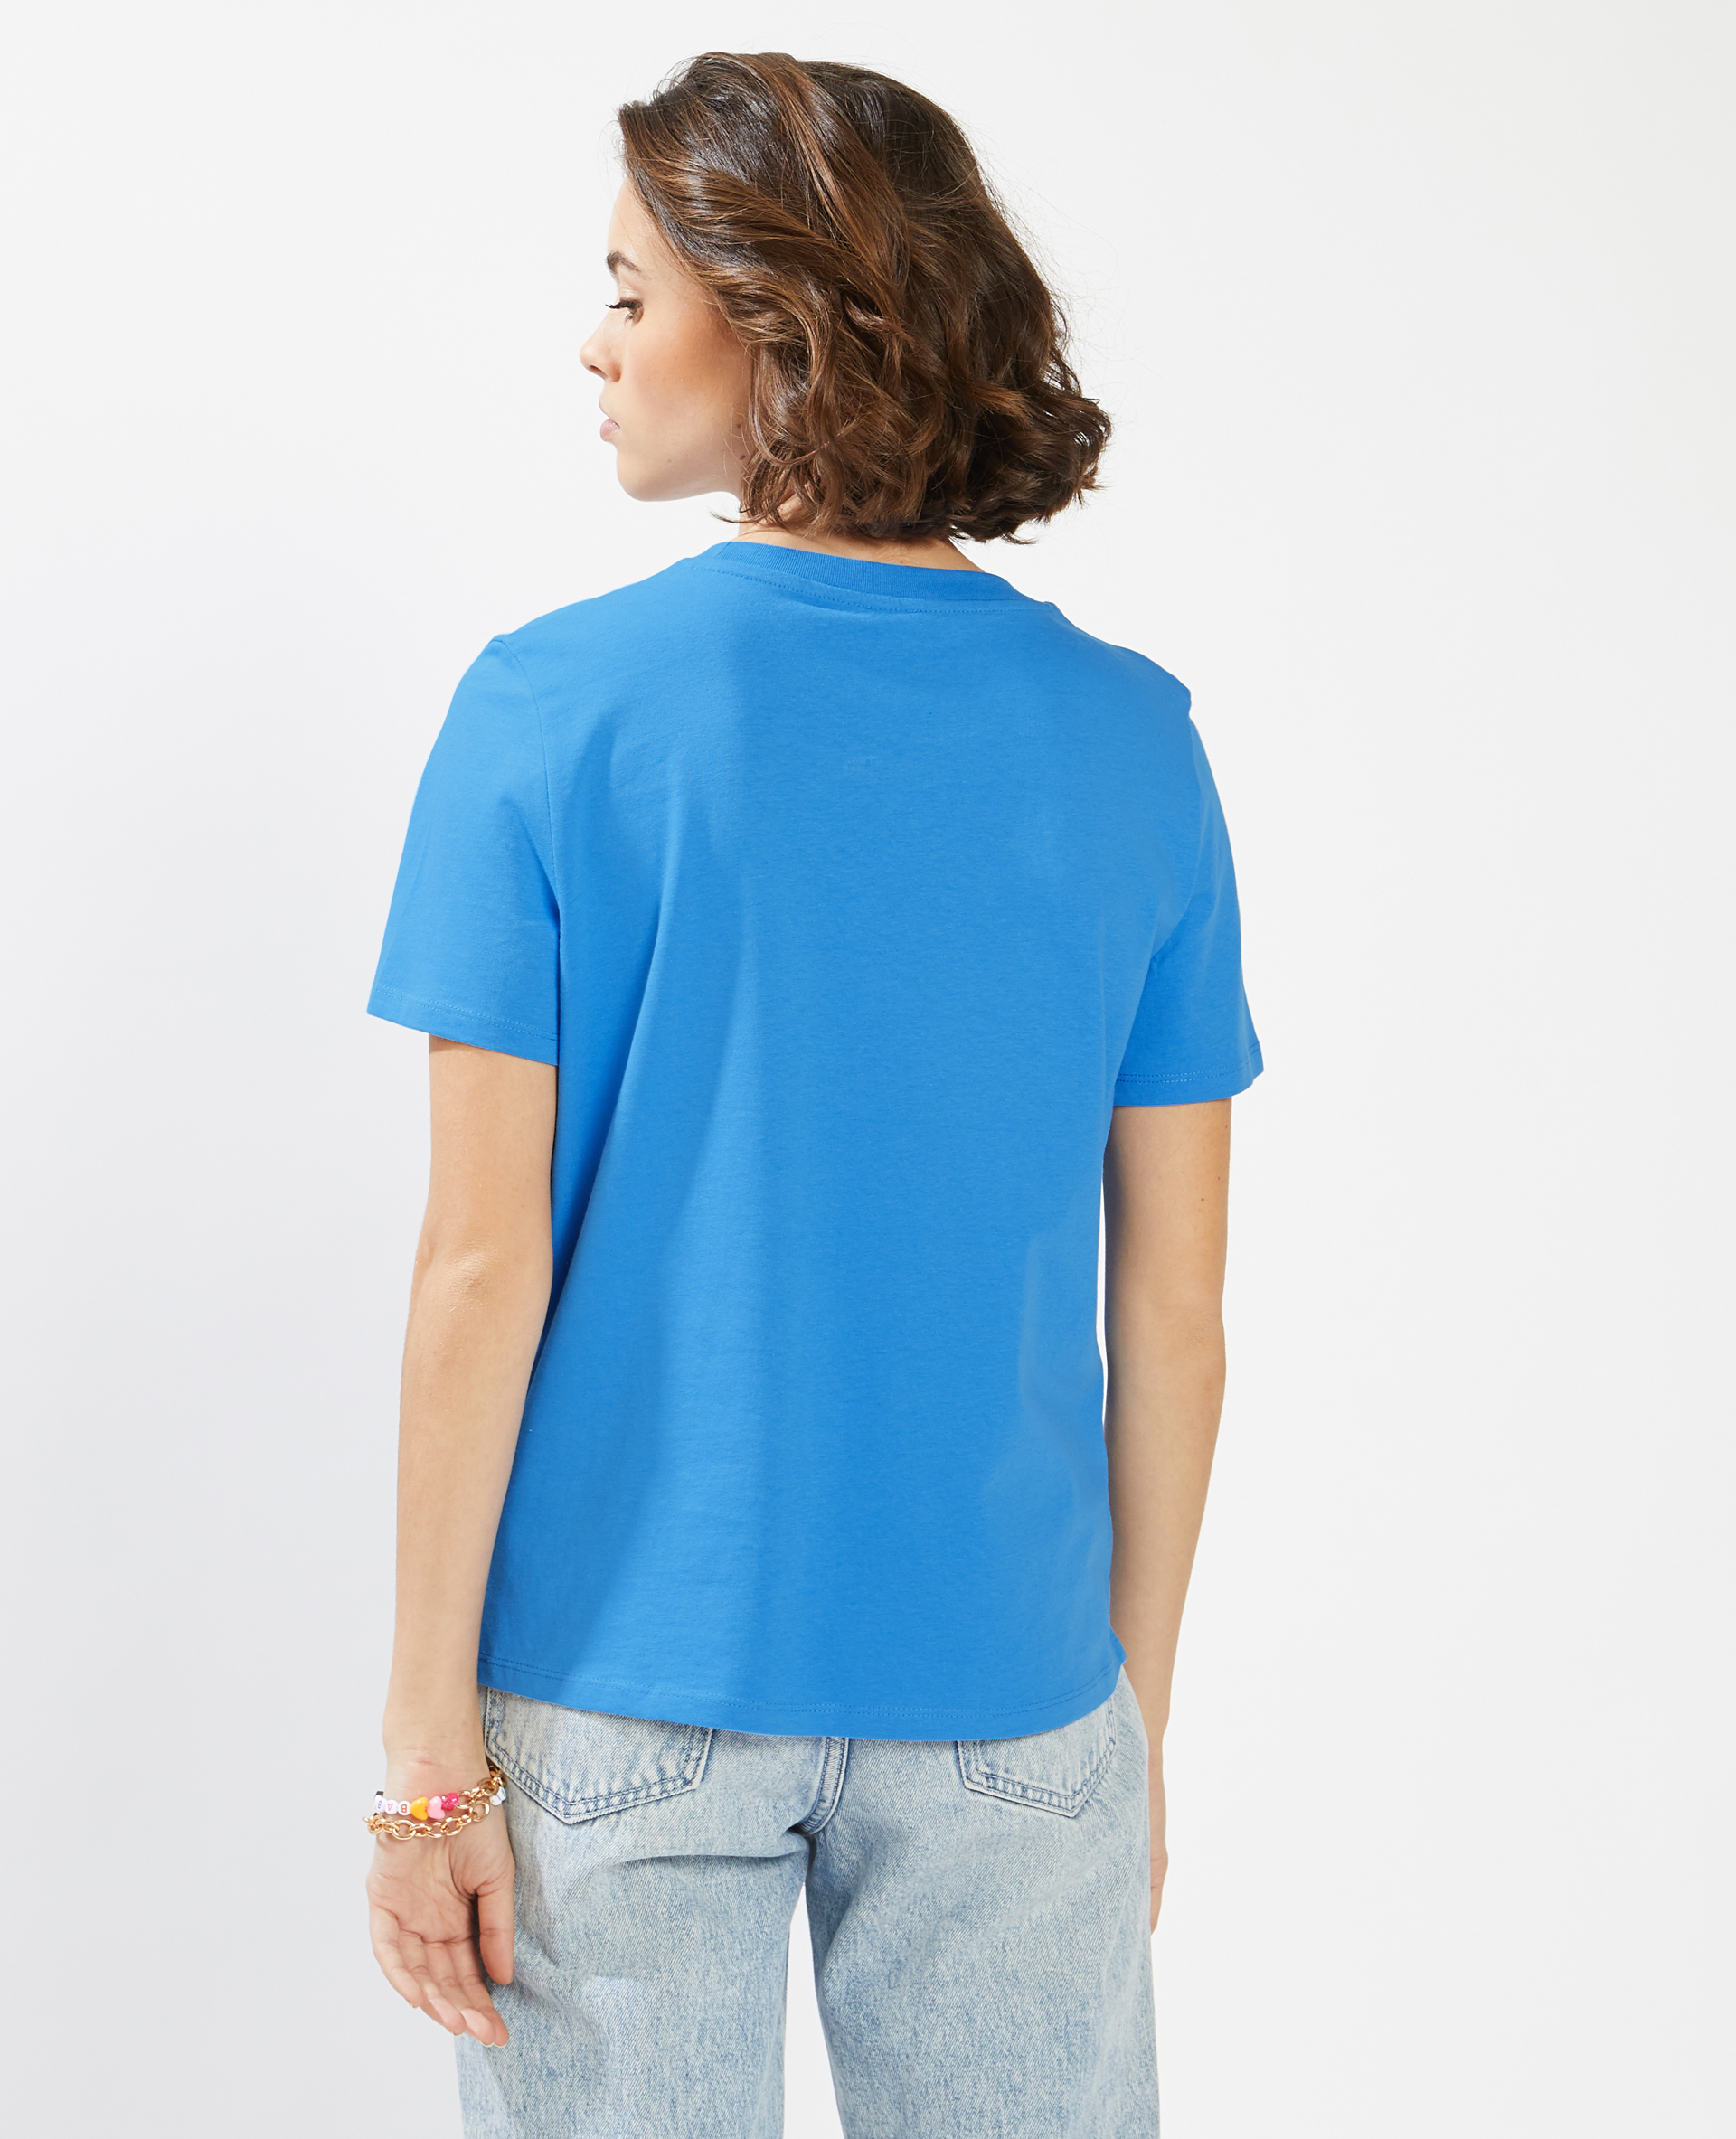 T-shirt inscription brodée bleu électrique - Pimkie